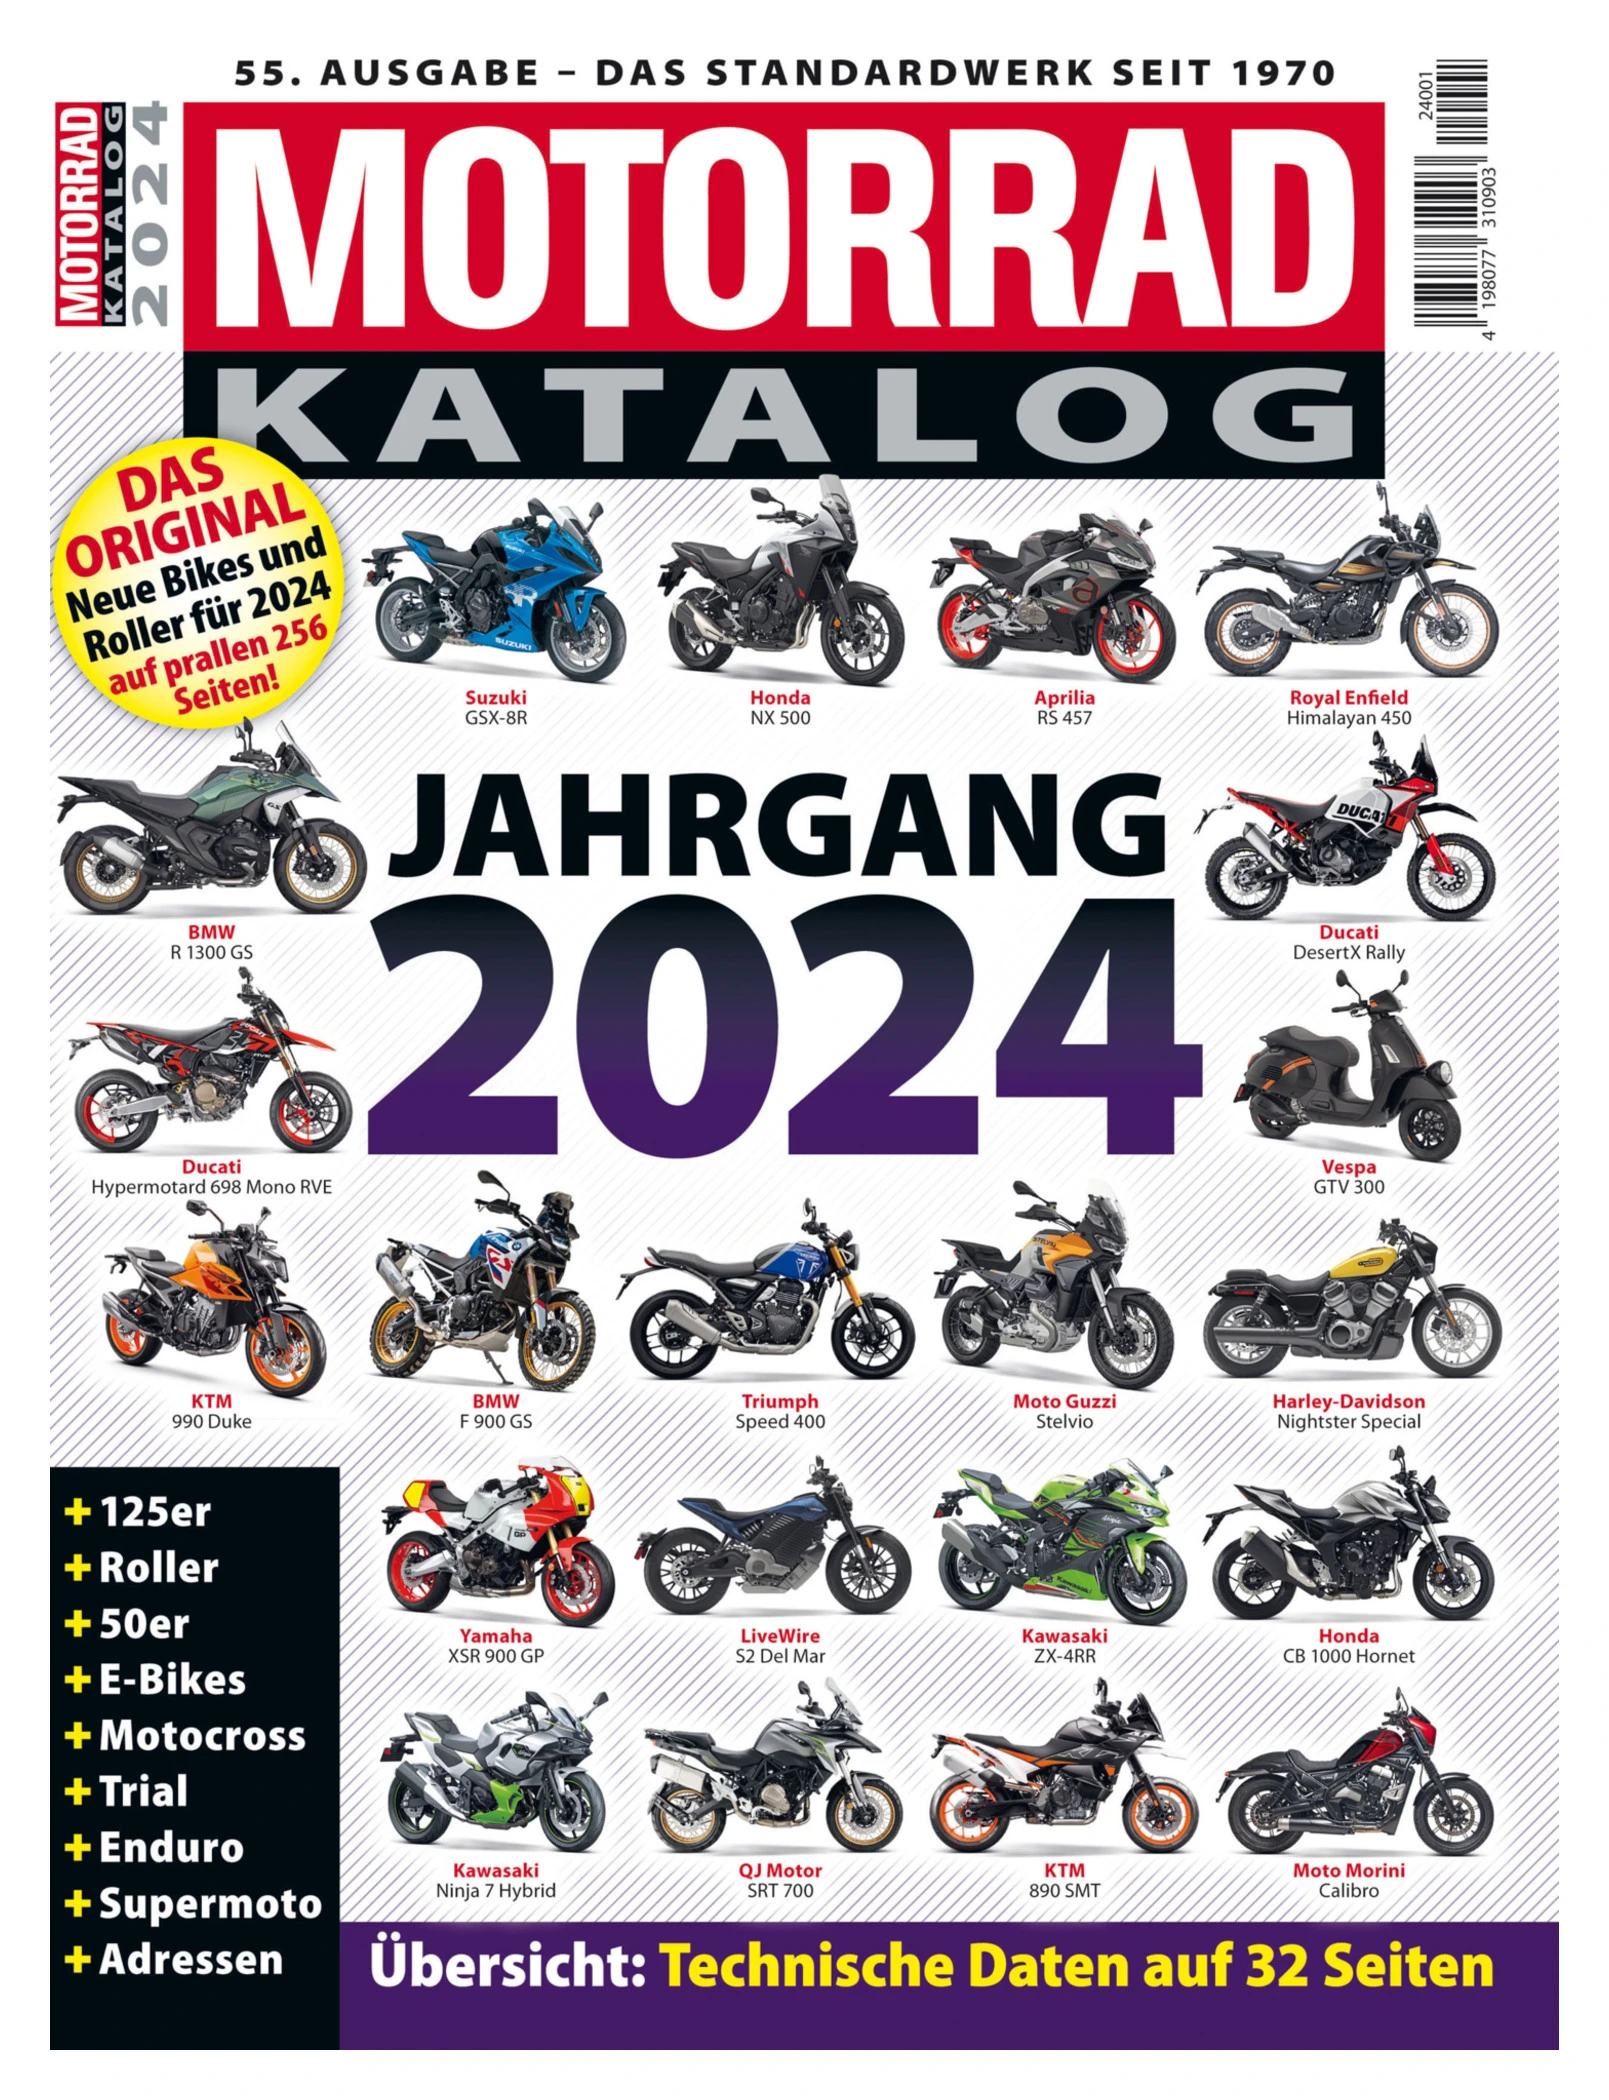 MOTORRAD - KATALOG 2024